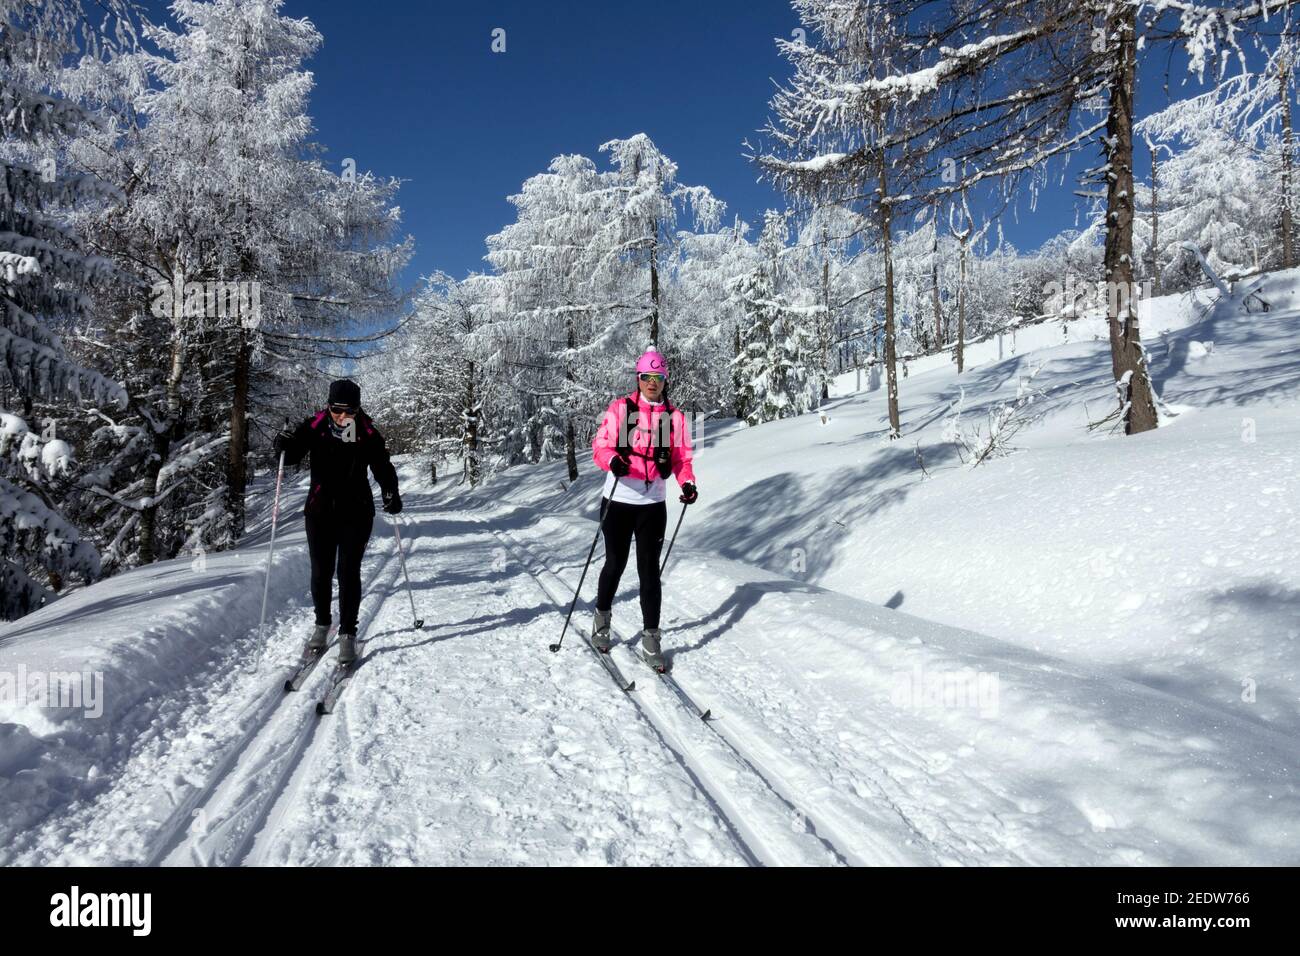 Wintersport Skilanglauf Frauen auf einer Skipiste Tschechische Republik Skifahren in tschechischen Bergen Winterszene Stockfoto